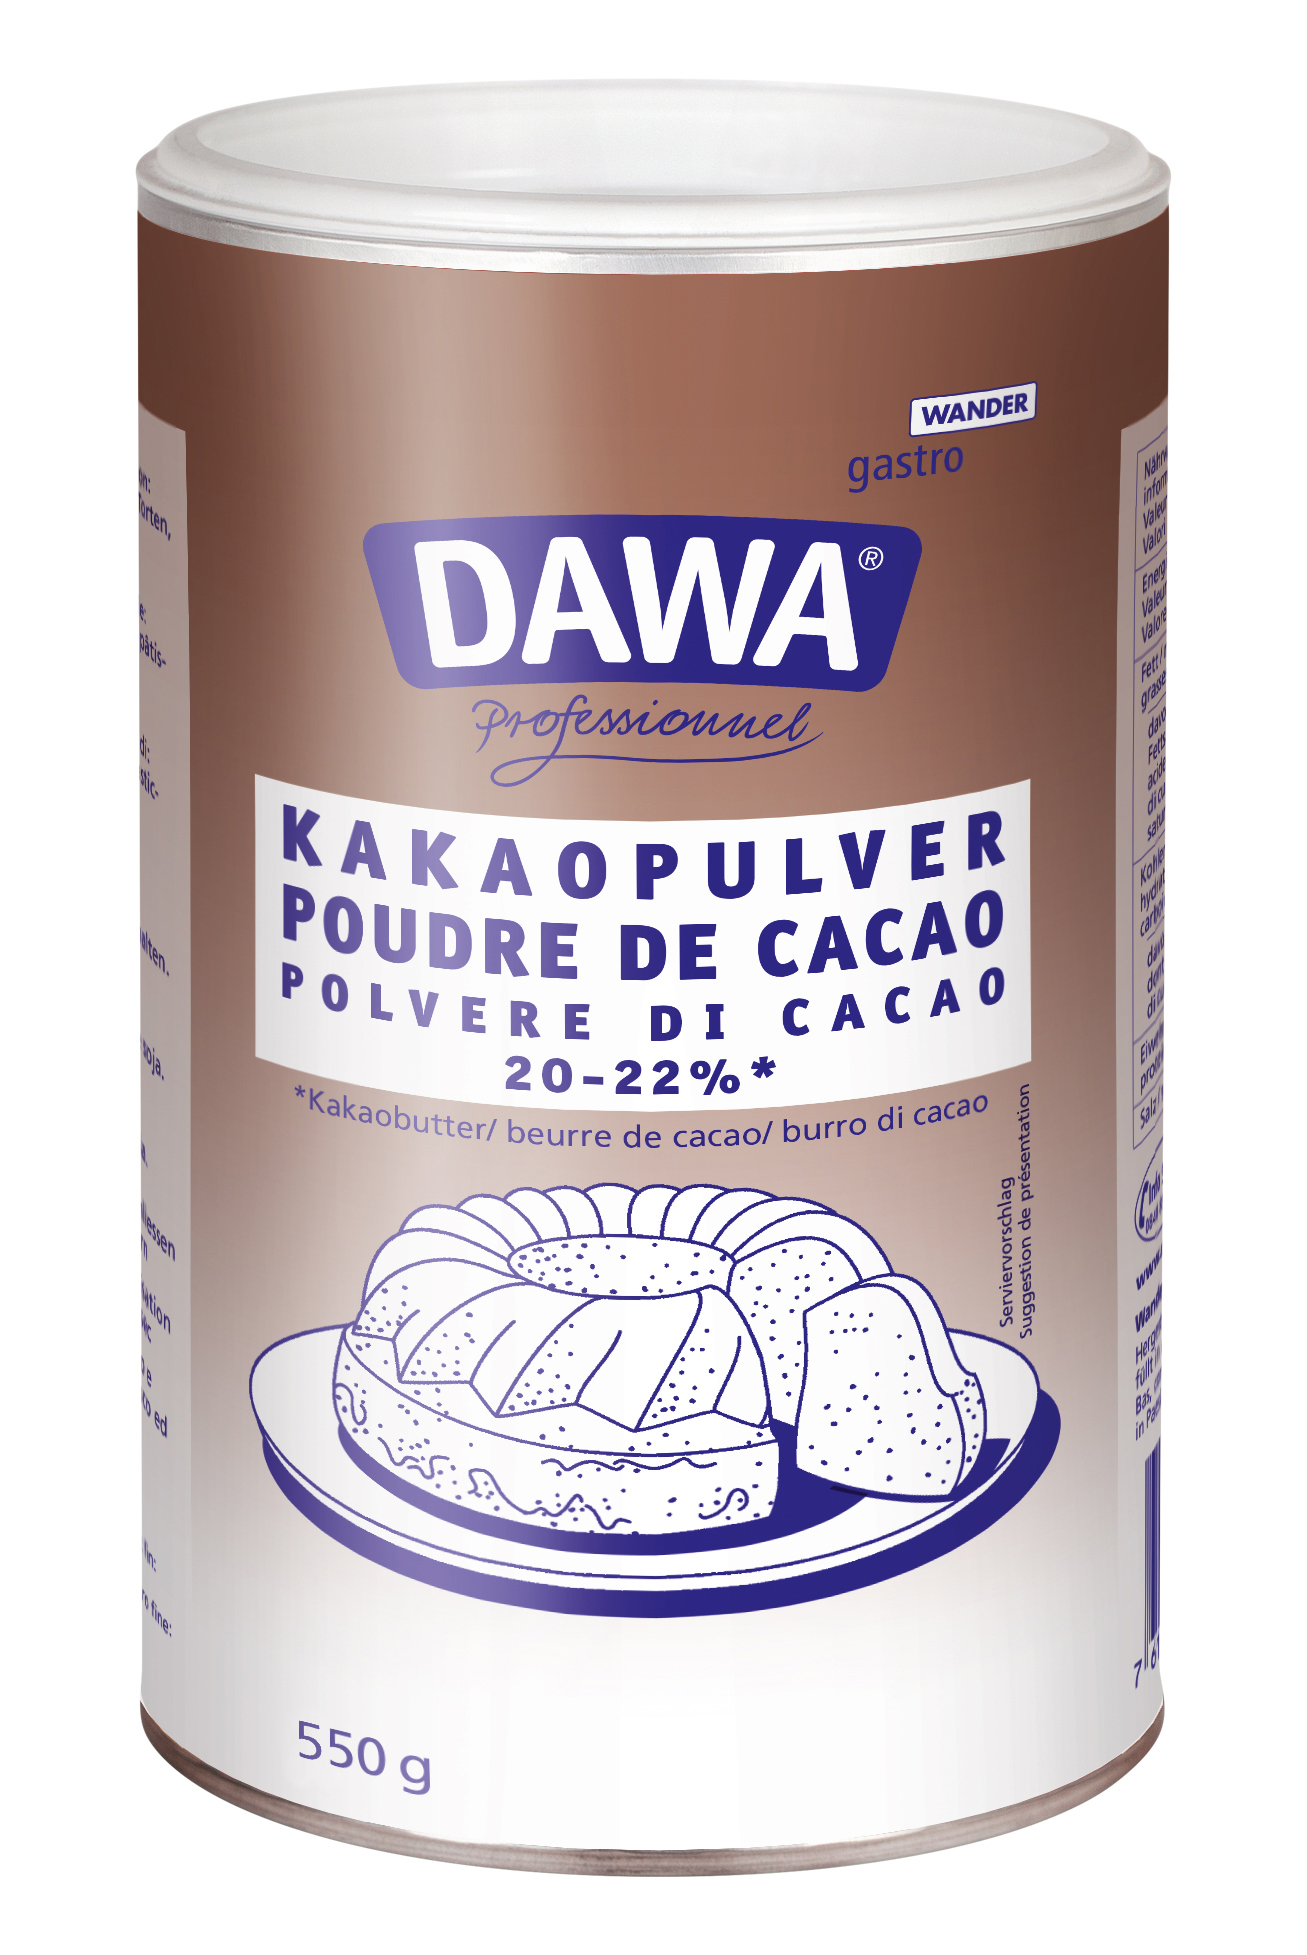  Dawa Poudre de cacao